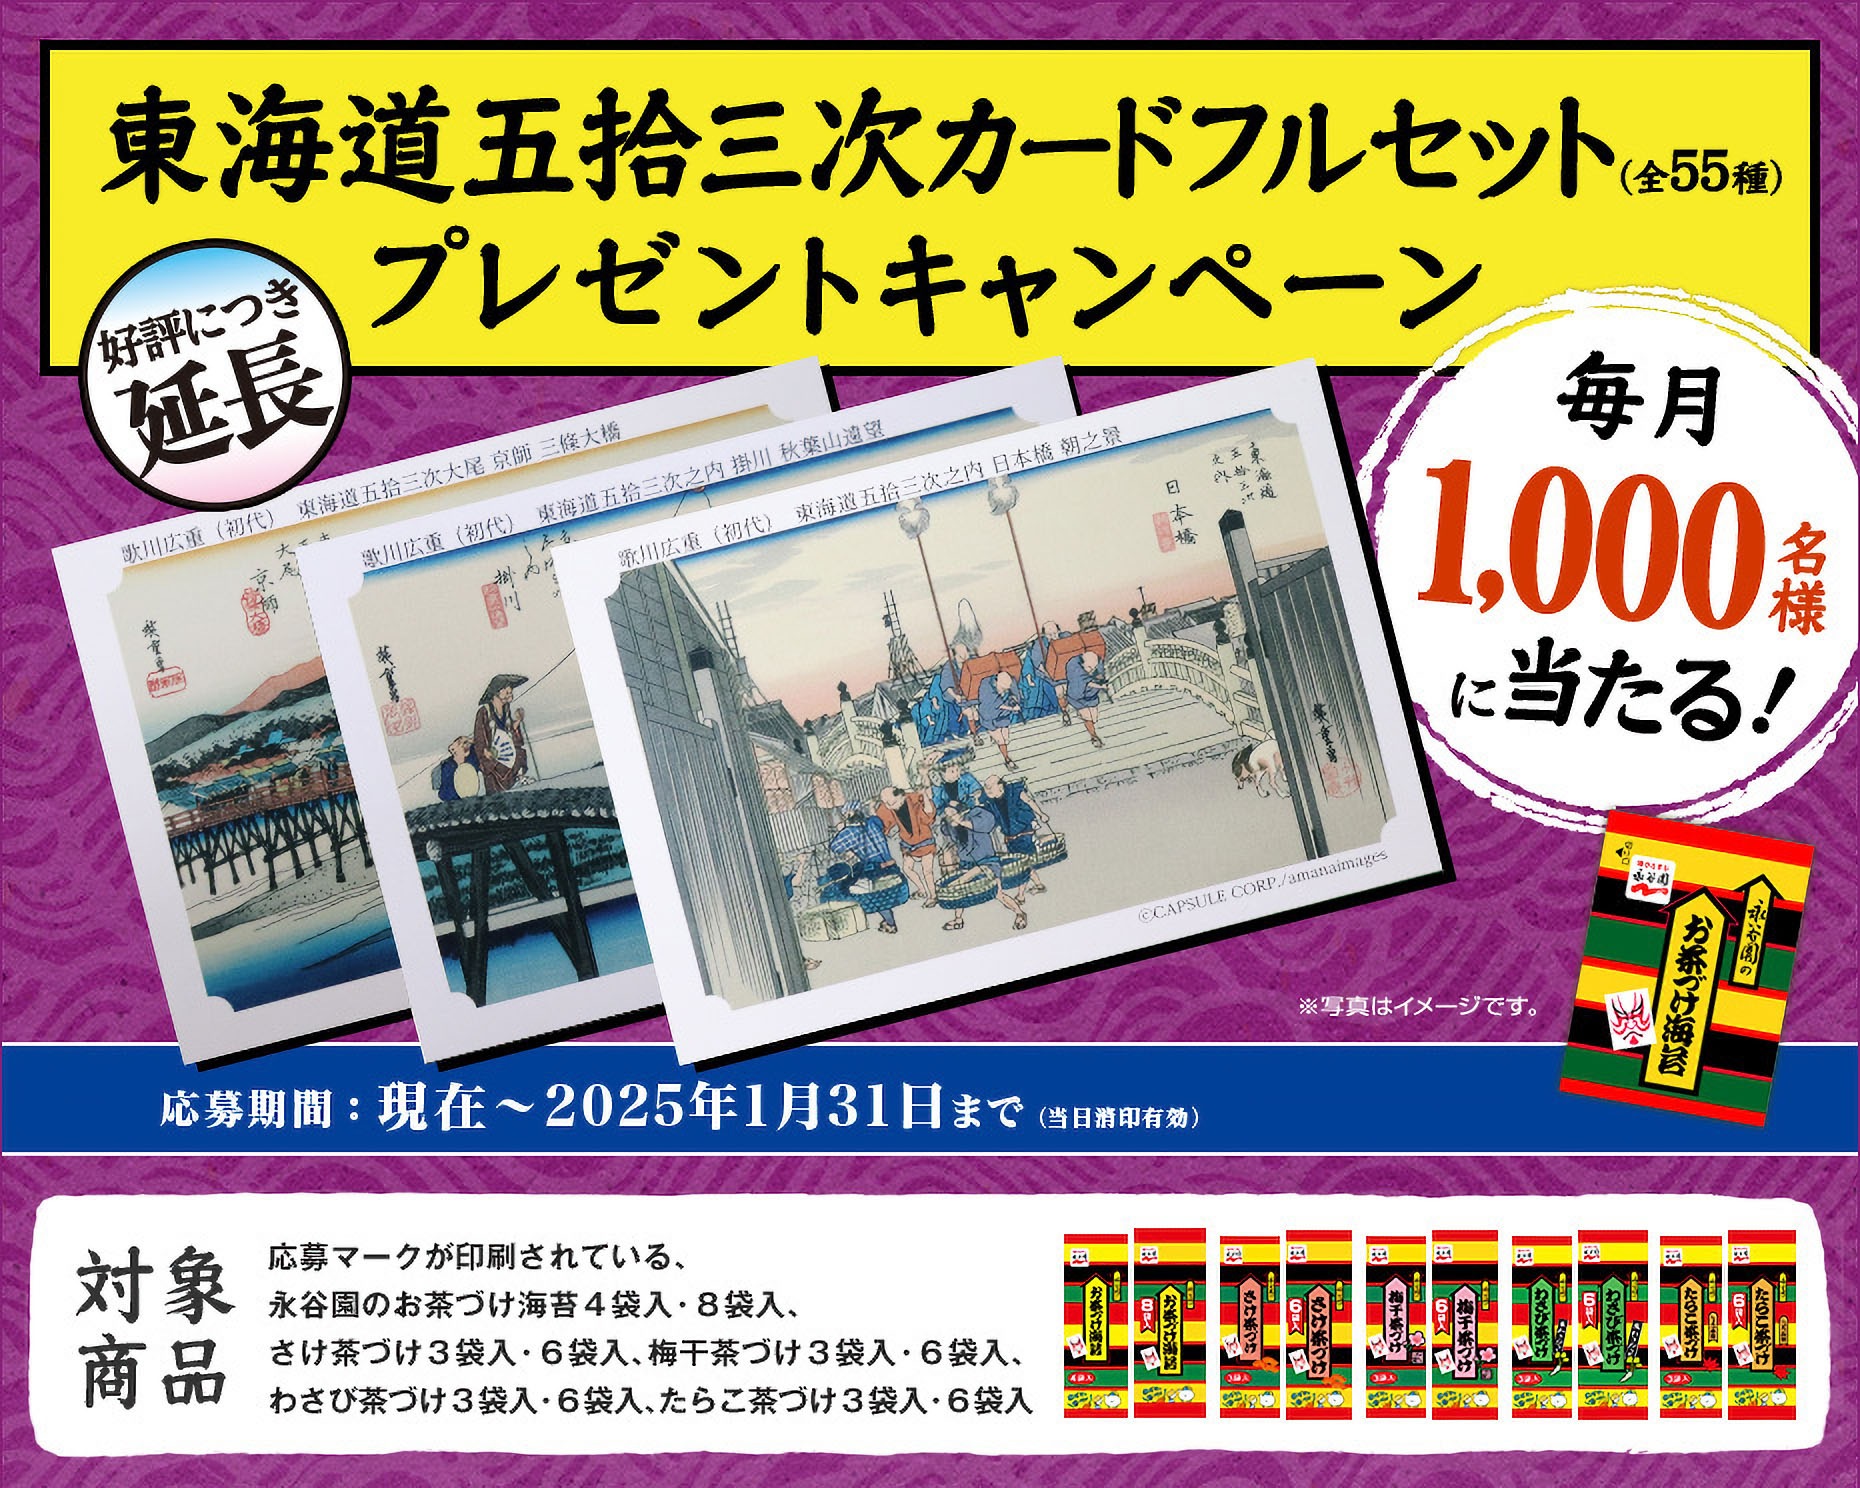 東海道五拾三次カードフルセット プレゼントキャンペーン 毎月1,000名様に当たる！ 応募期間：現在～2022年1月31日まで(当日消印有効)